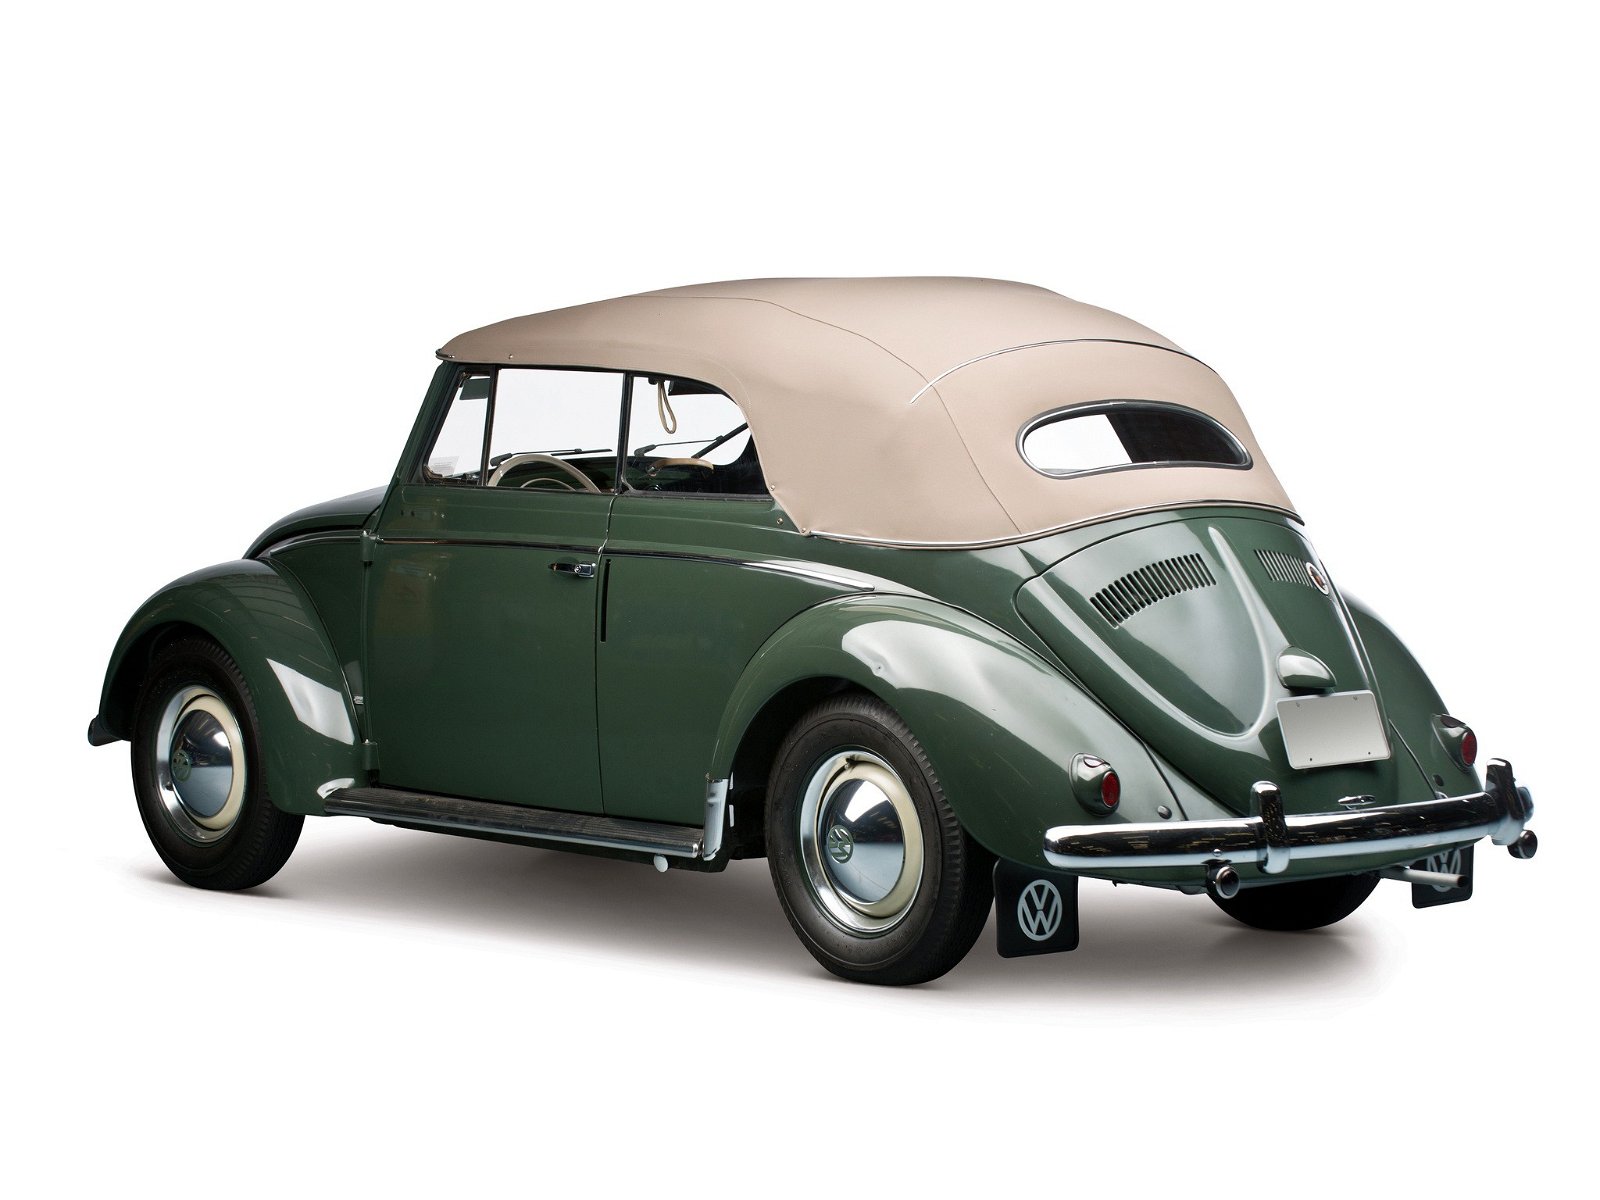 Classic VW Beetle green